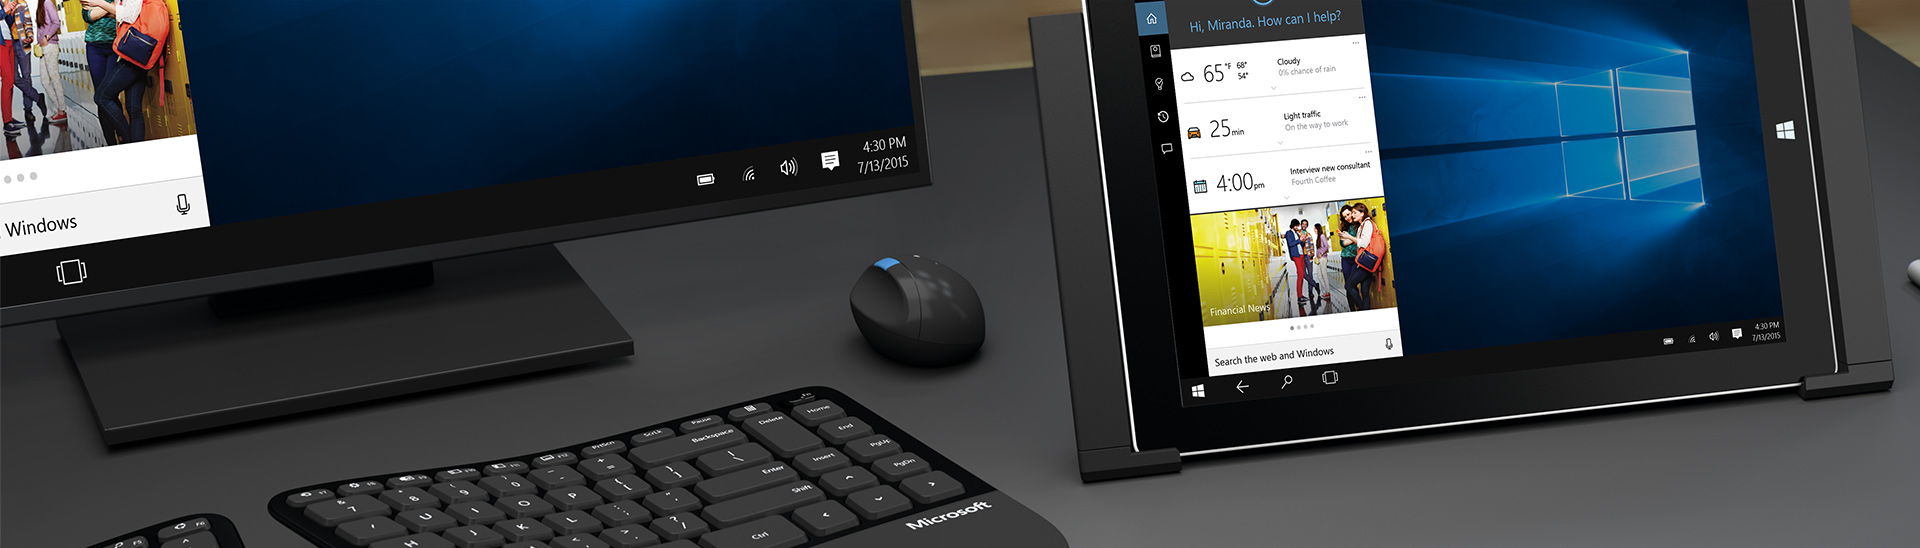 Image promotionnelle d’un bureau, d’un clavier, d’une souris et d’une tablette Microsoft